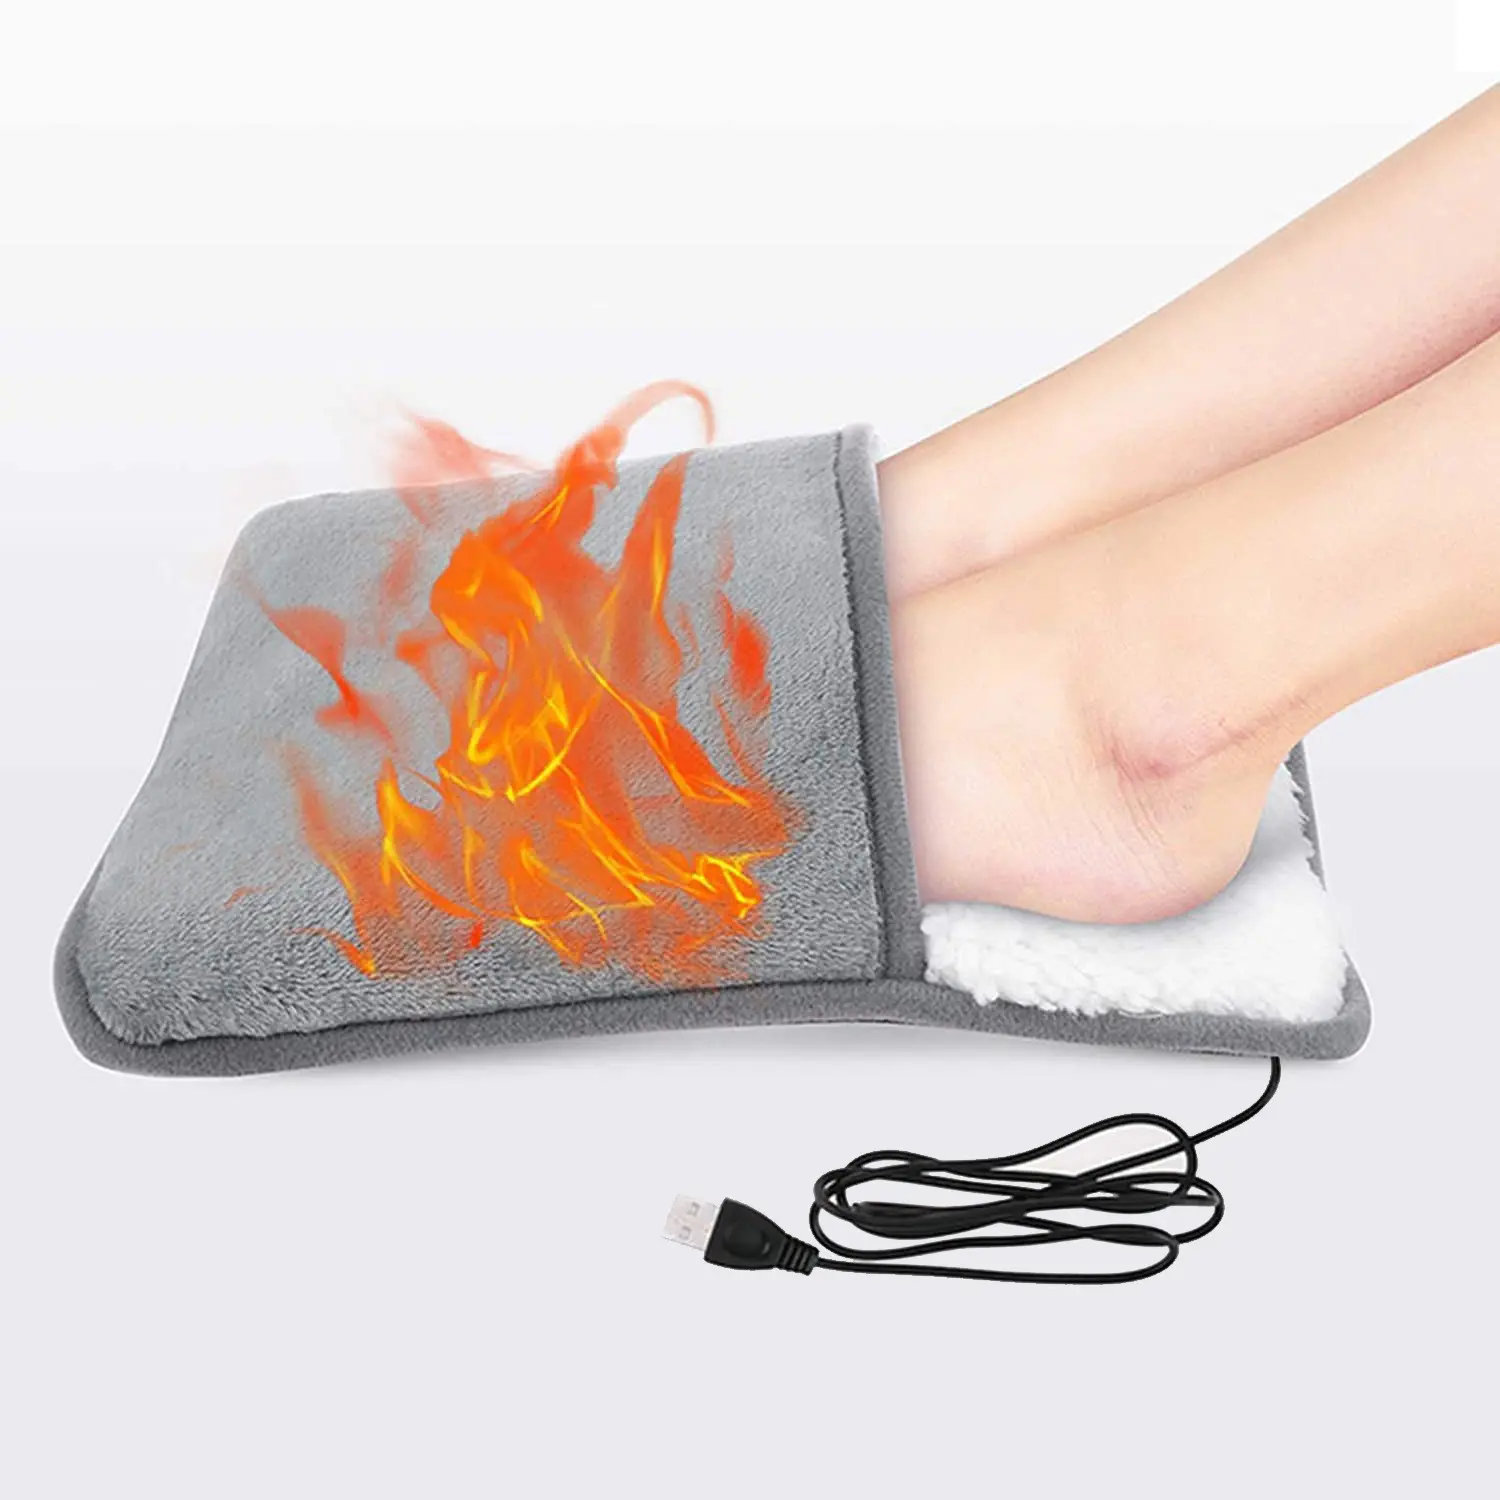 Zapatillas calentadoras para pies, calentador de manos eléctrico con USB, lavable, para invierno